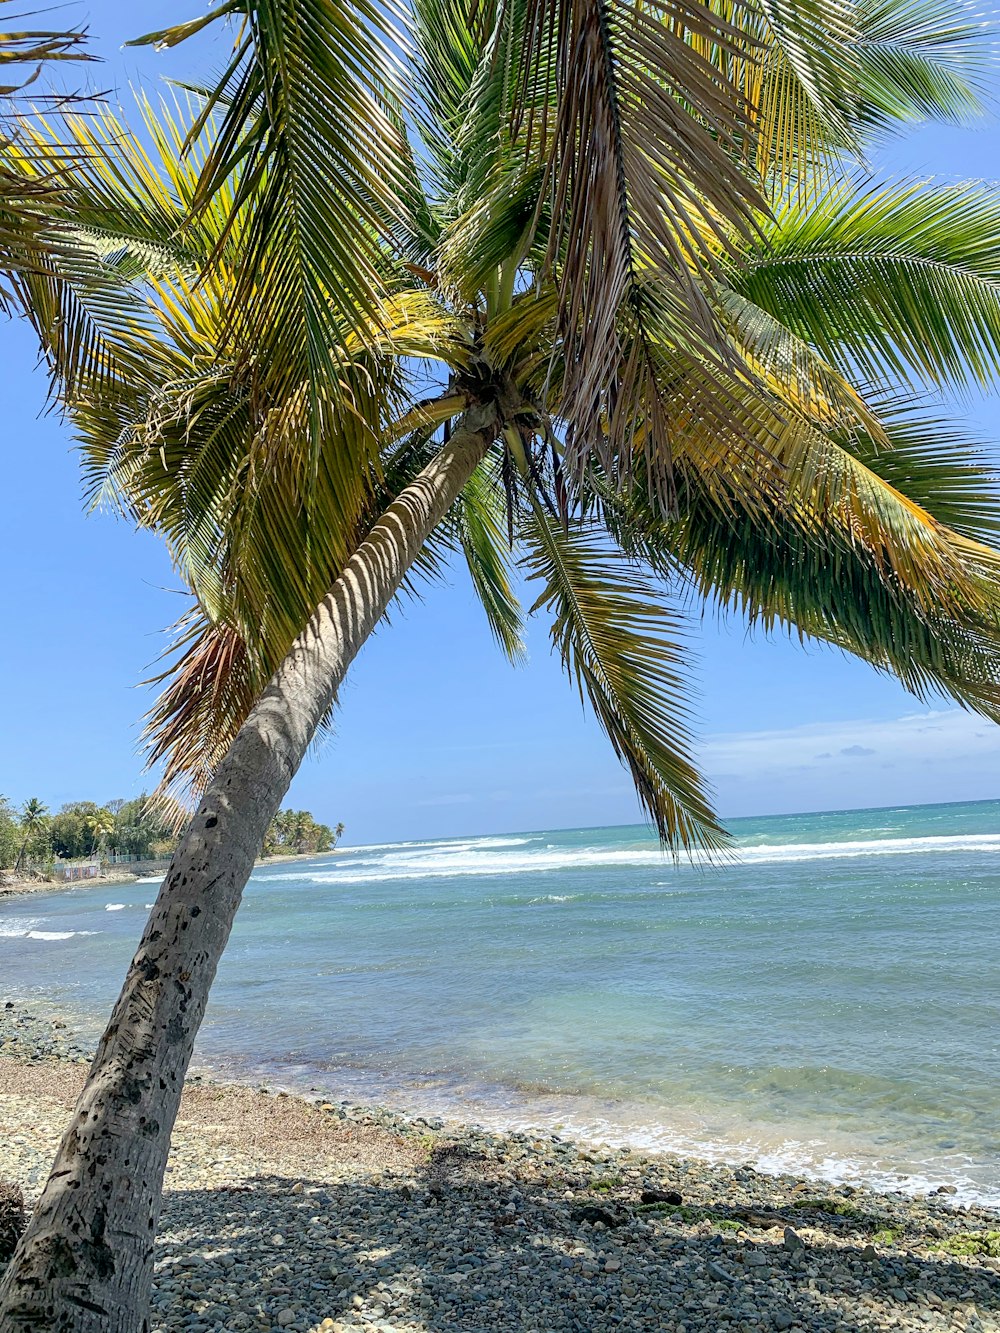 Un palmier sur une plage avec l’océan en arrière-plan